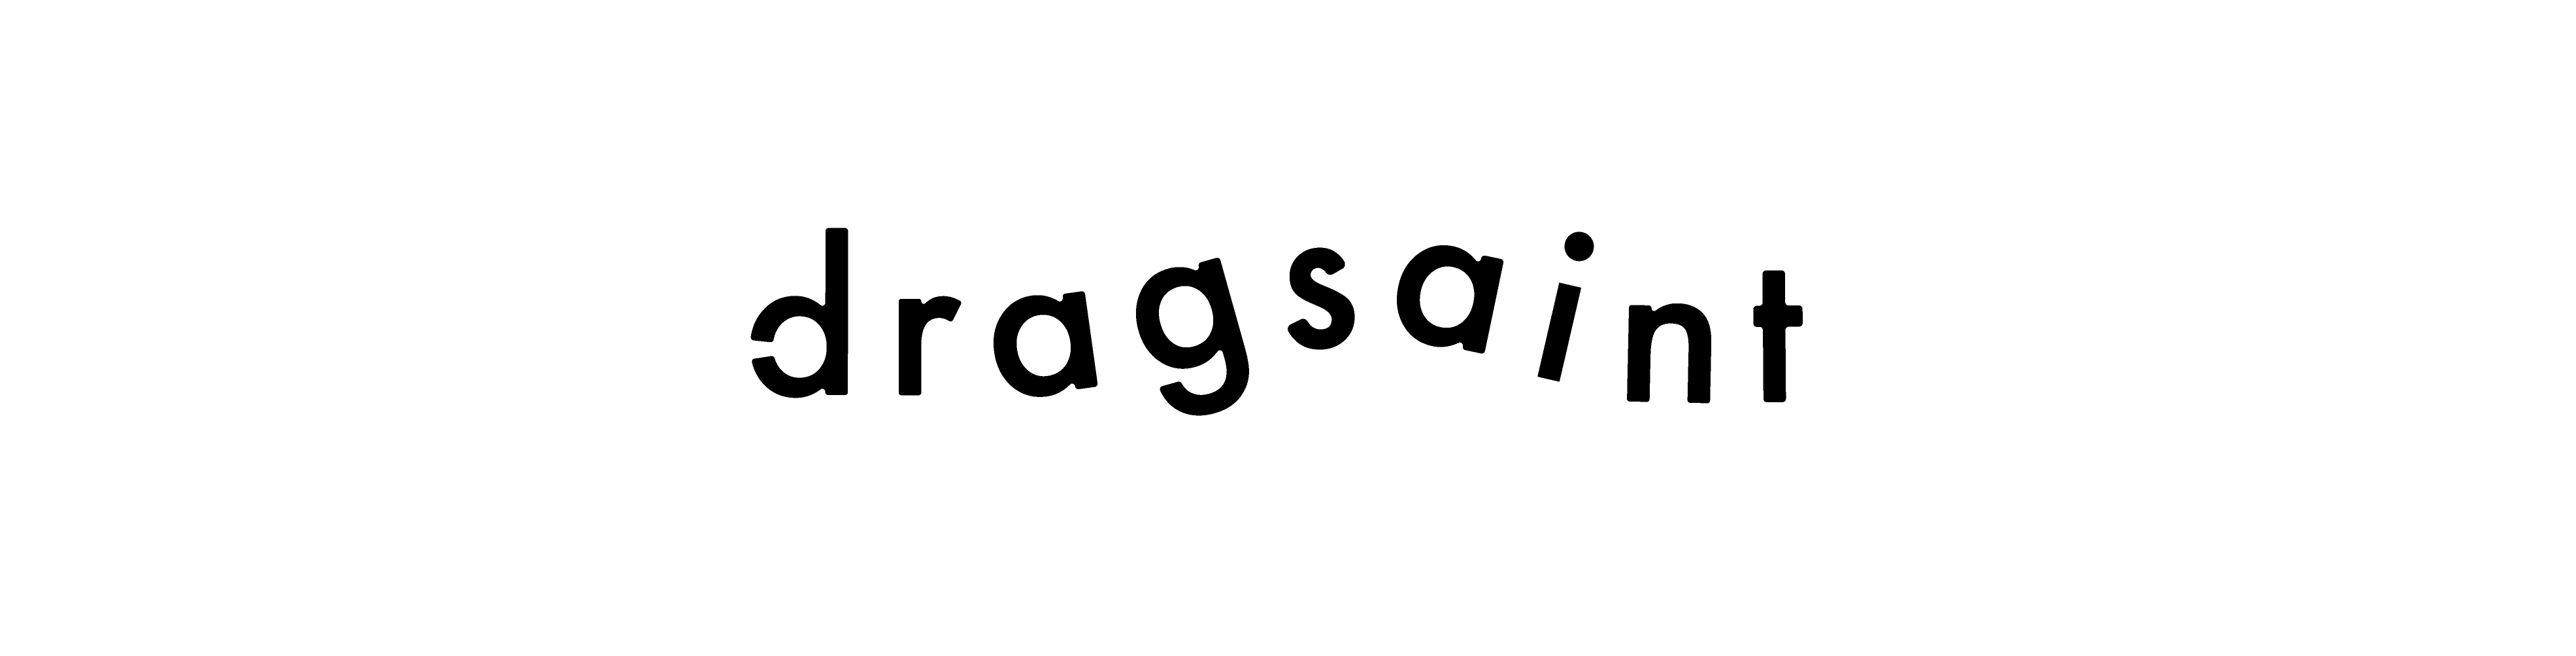 dragsaint 